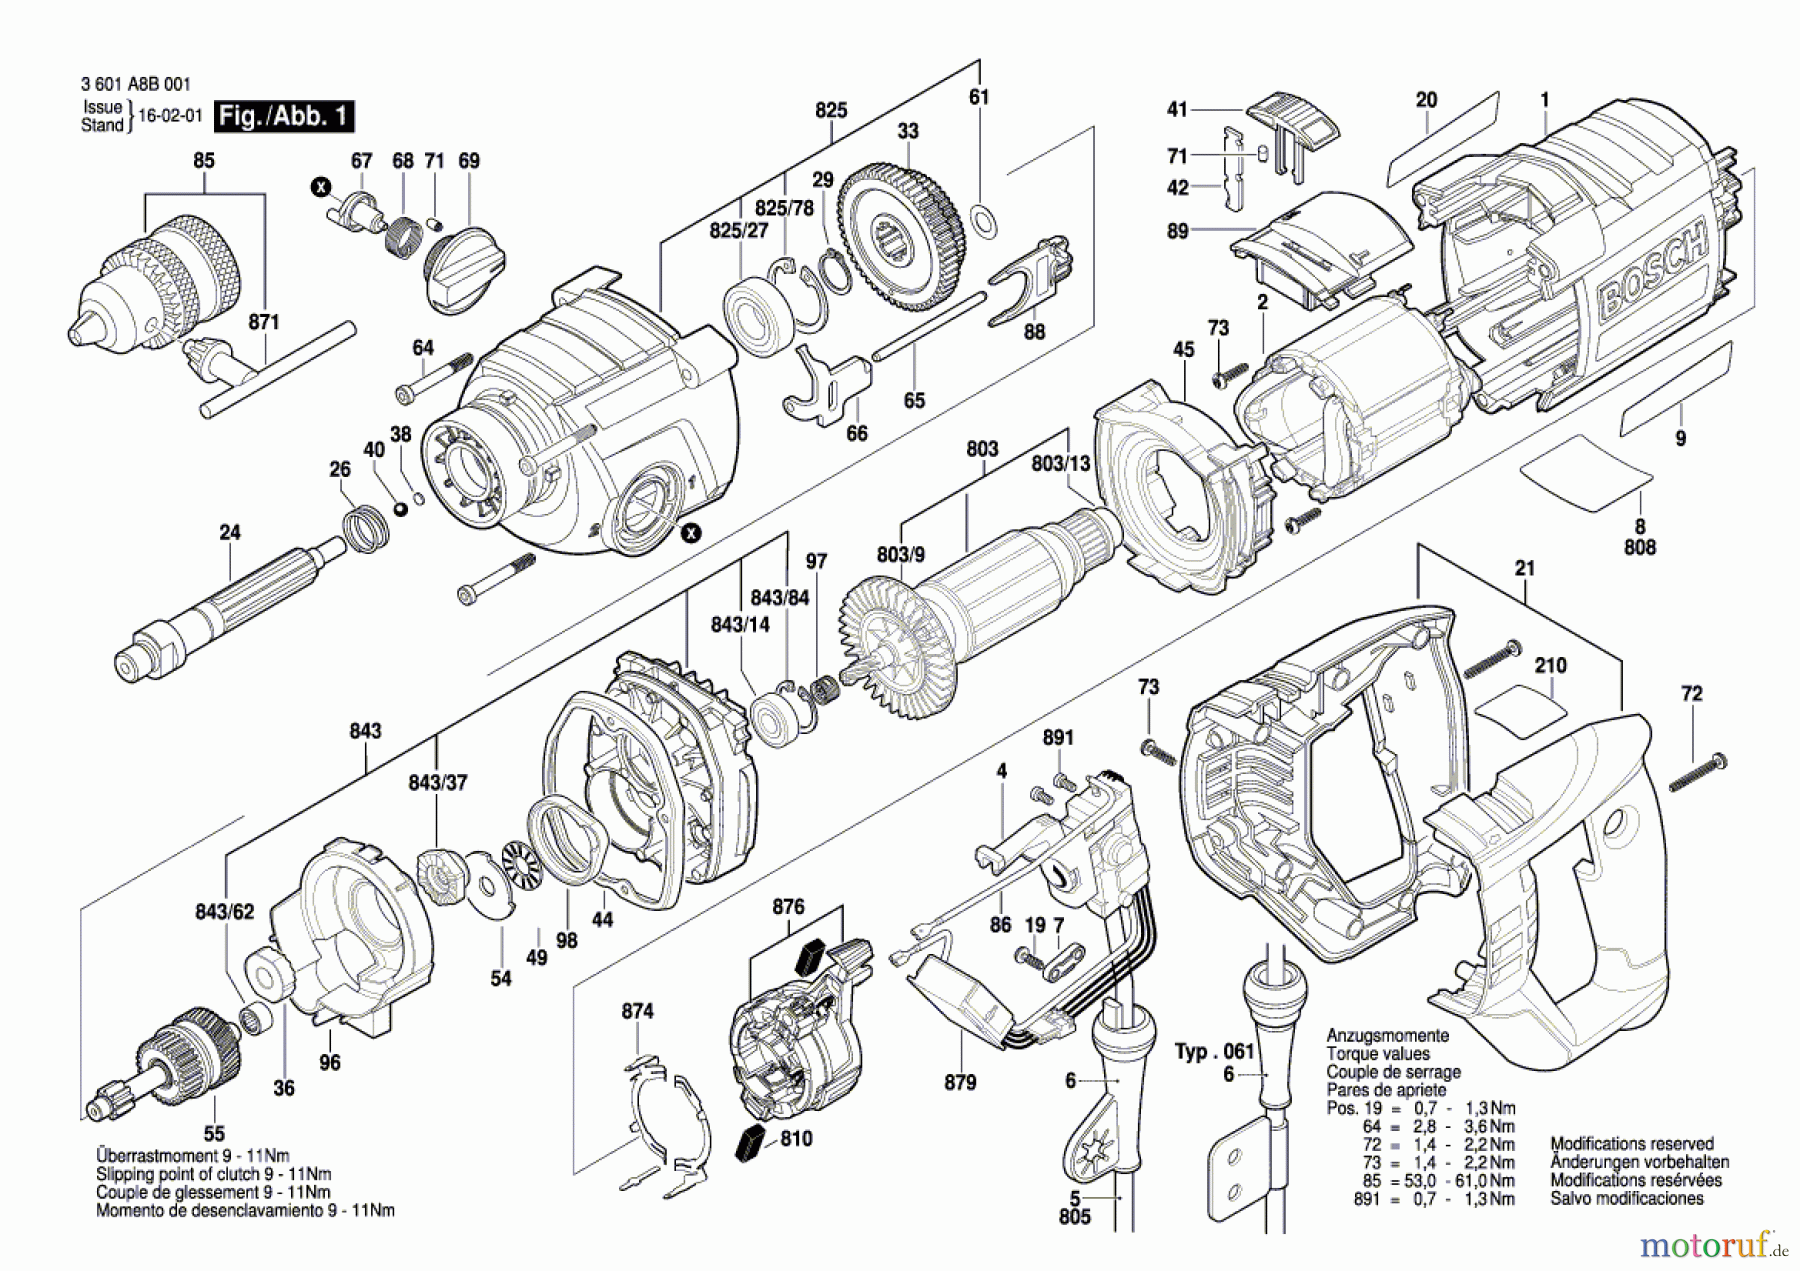  Bosch Werkzeug Schlagbohrmaschine GSB 162-2 RE Seite 1